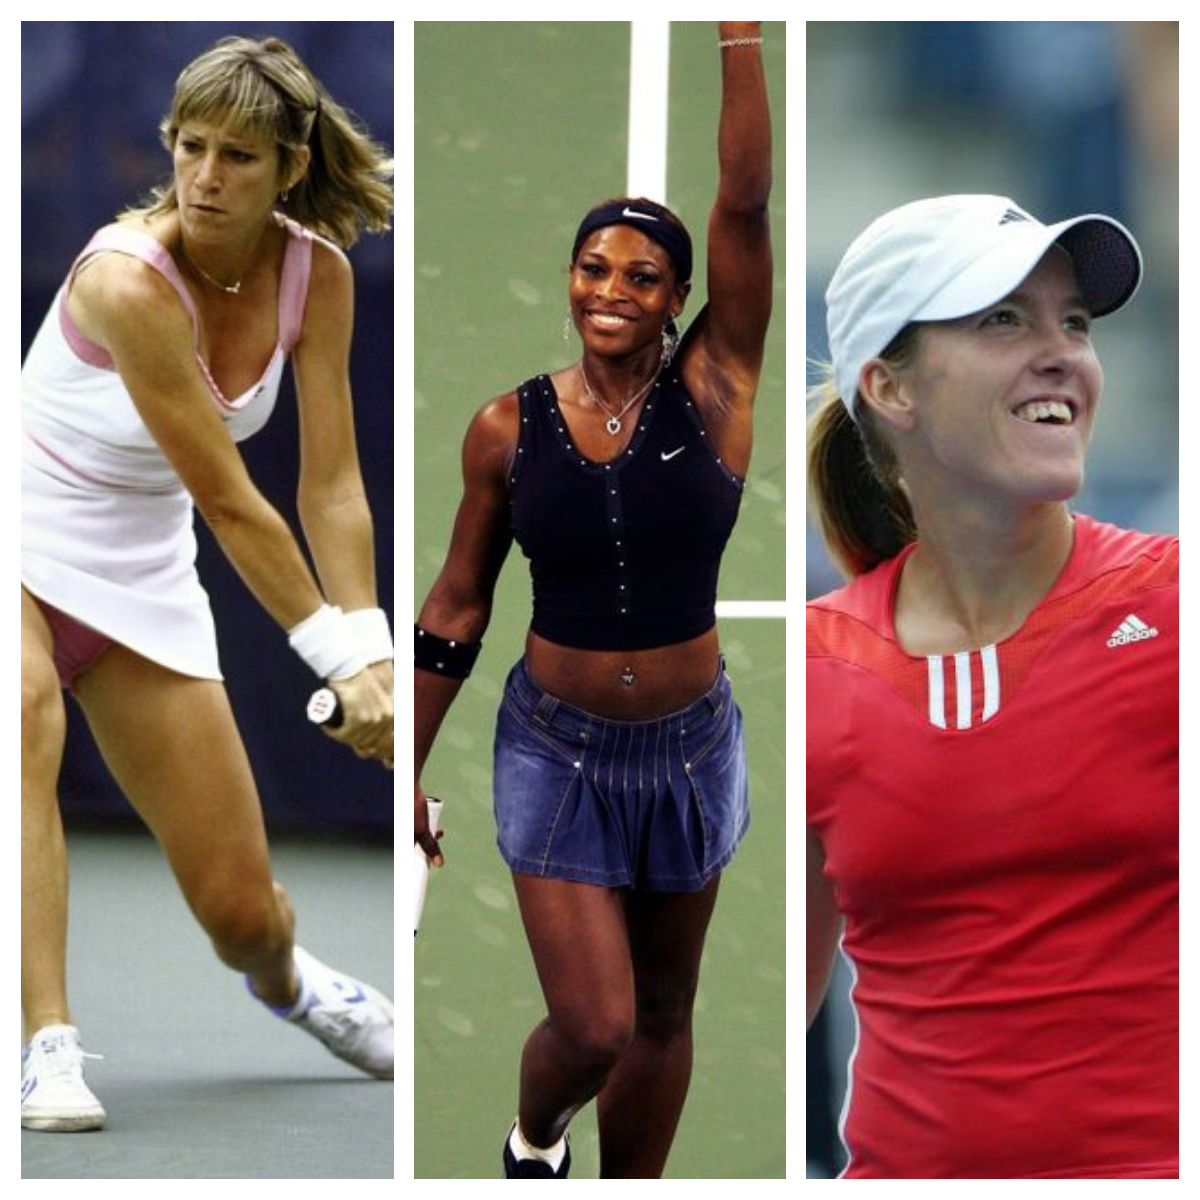 Quais os principais jogadores e jogadoras tenistas?